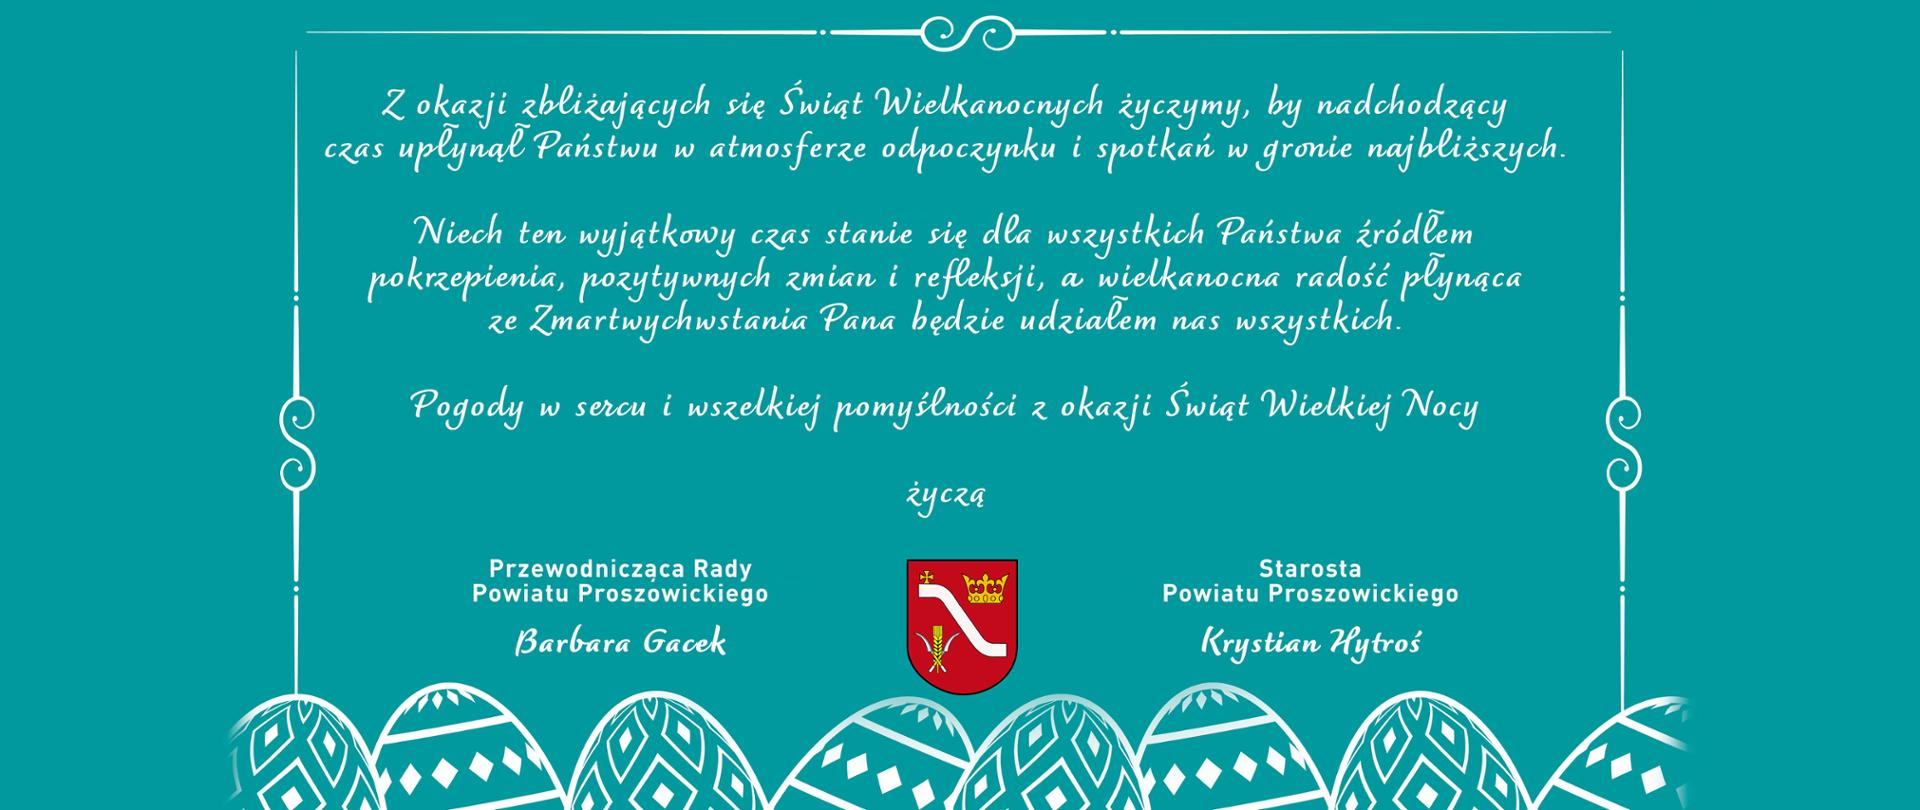 Na morskim tle życzenia z okazji Świąt Wielkanocnych od Starosty Powiatu Proszowickiego i Przewodniczącej Rady Powiatu Proszowickiego, pod treścią życzeń herb powiatu, w dole pisanki.